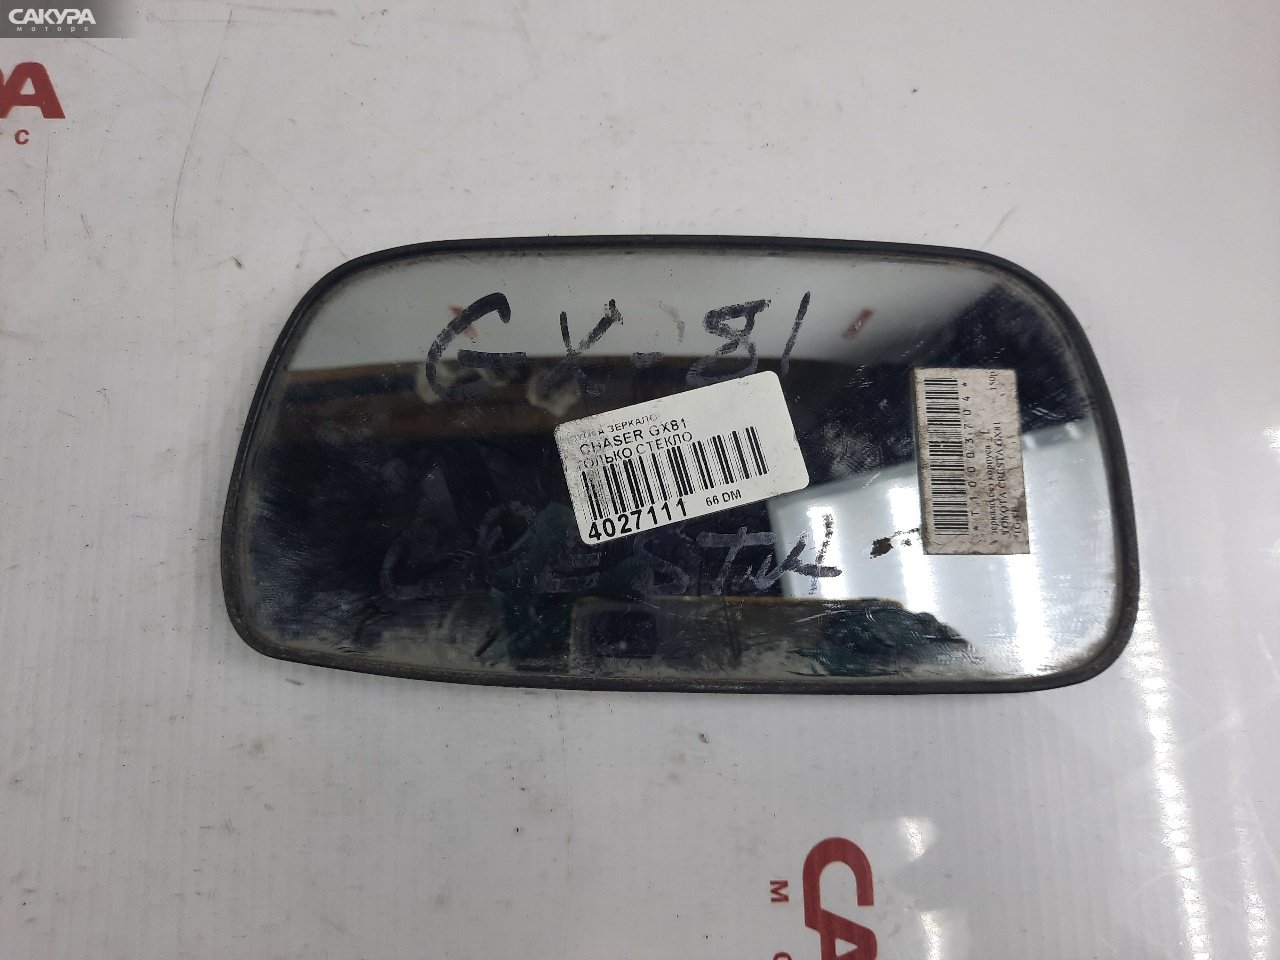 Зеркало боковое левое Toyota Chaser GX81: купить в Сакура Красноярск.